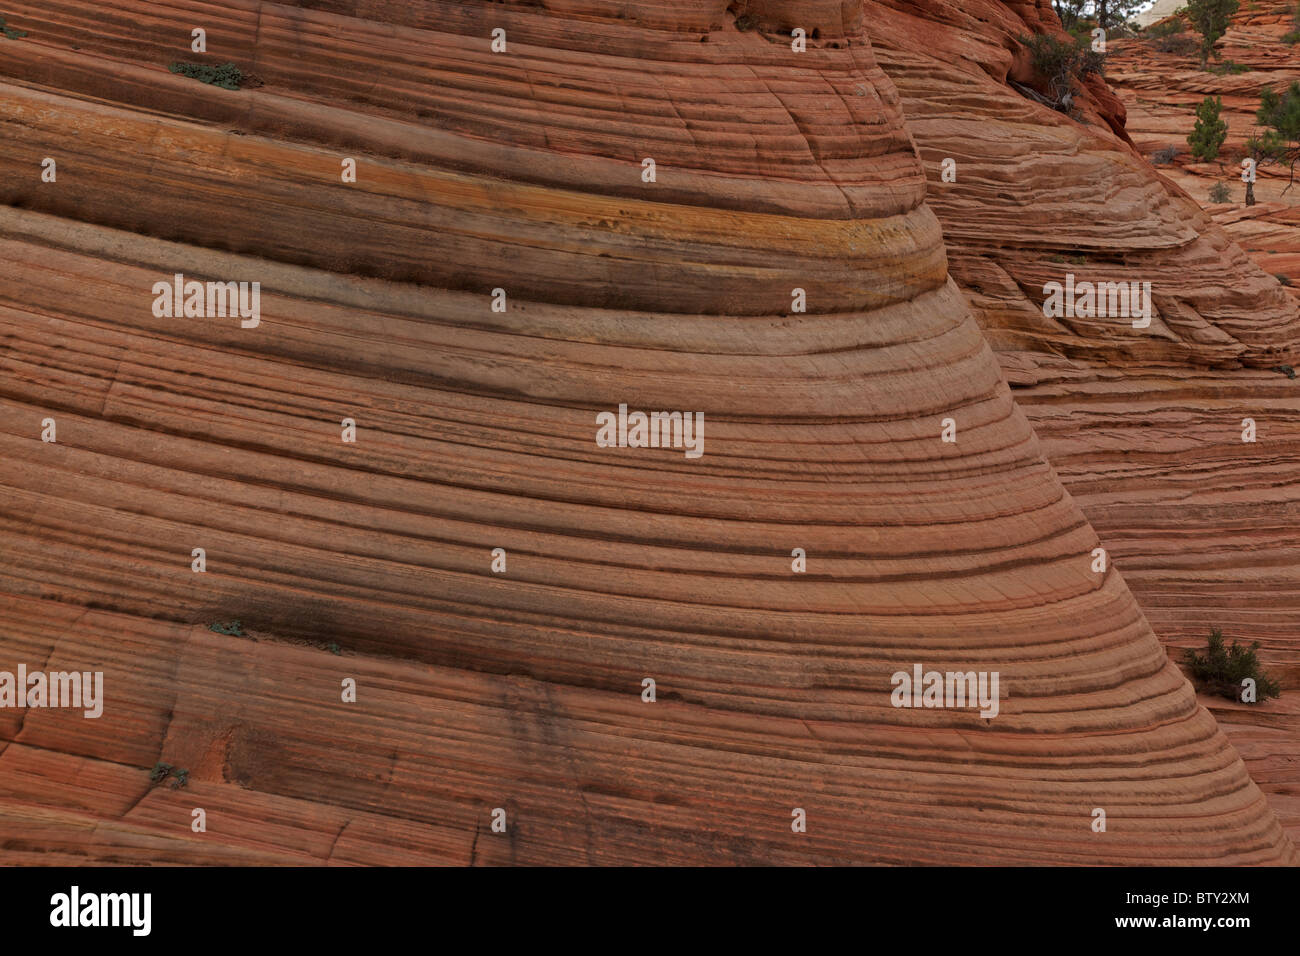 Le parc national de Zion - Utah - USA - montrant les couches de grès en lits Banque D'Images